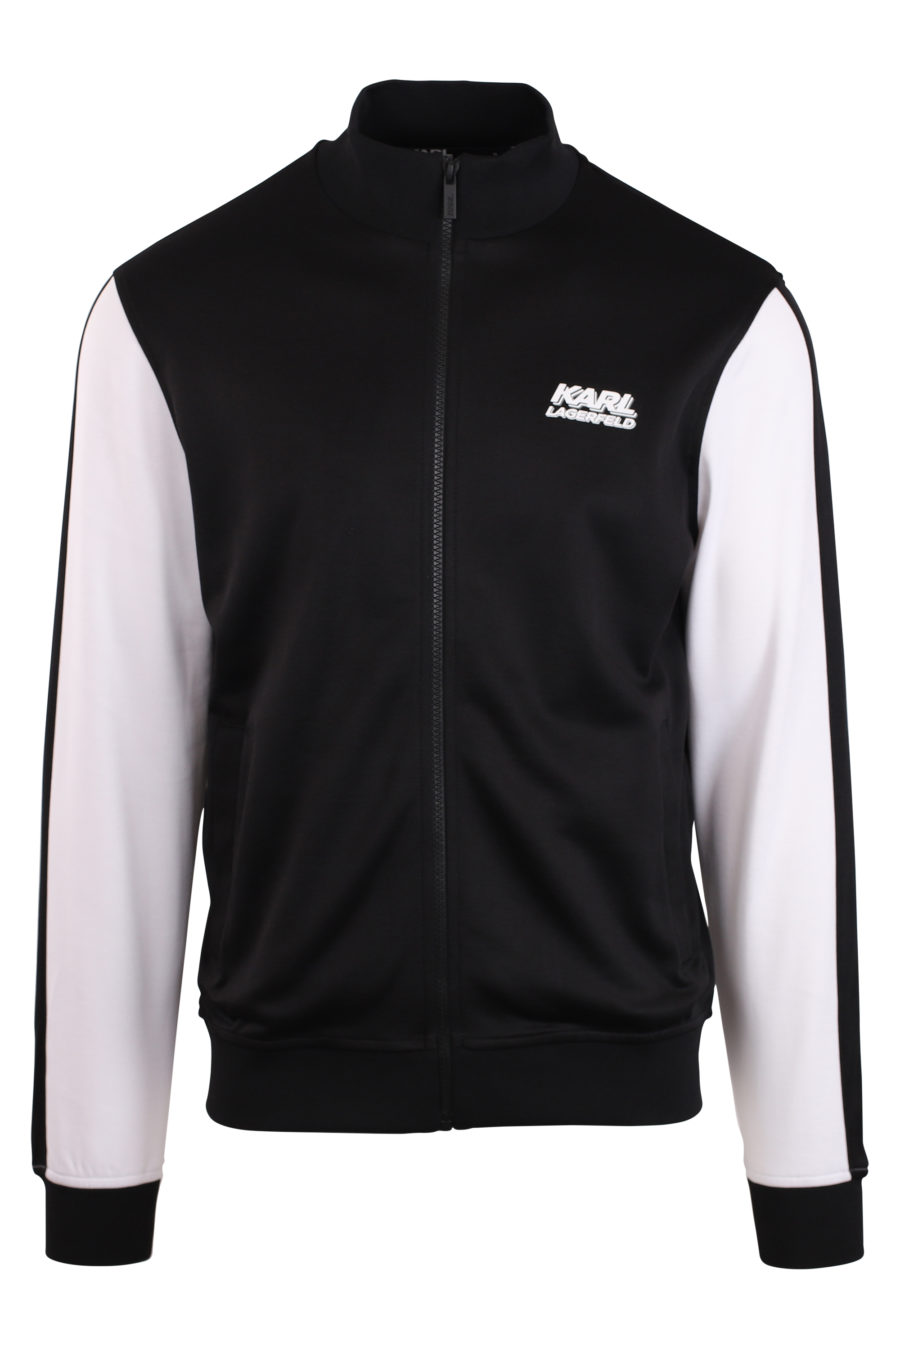 Schwarze Jacke mit weißen Ärmeln und weißem Logo - IMG 0930